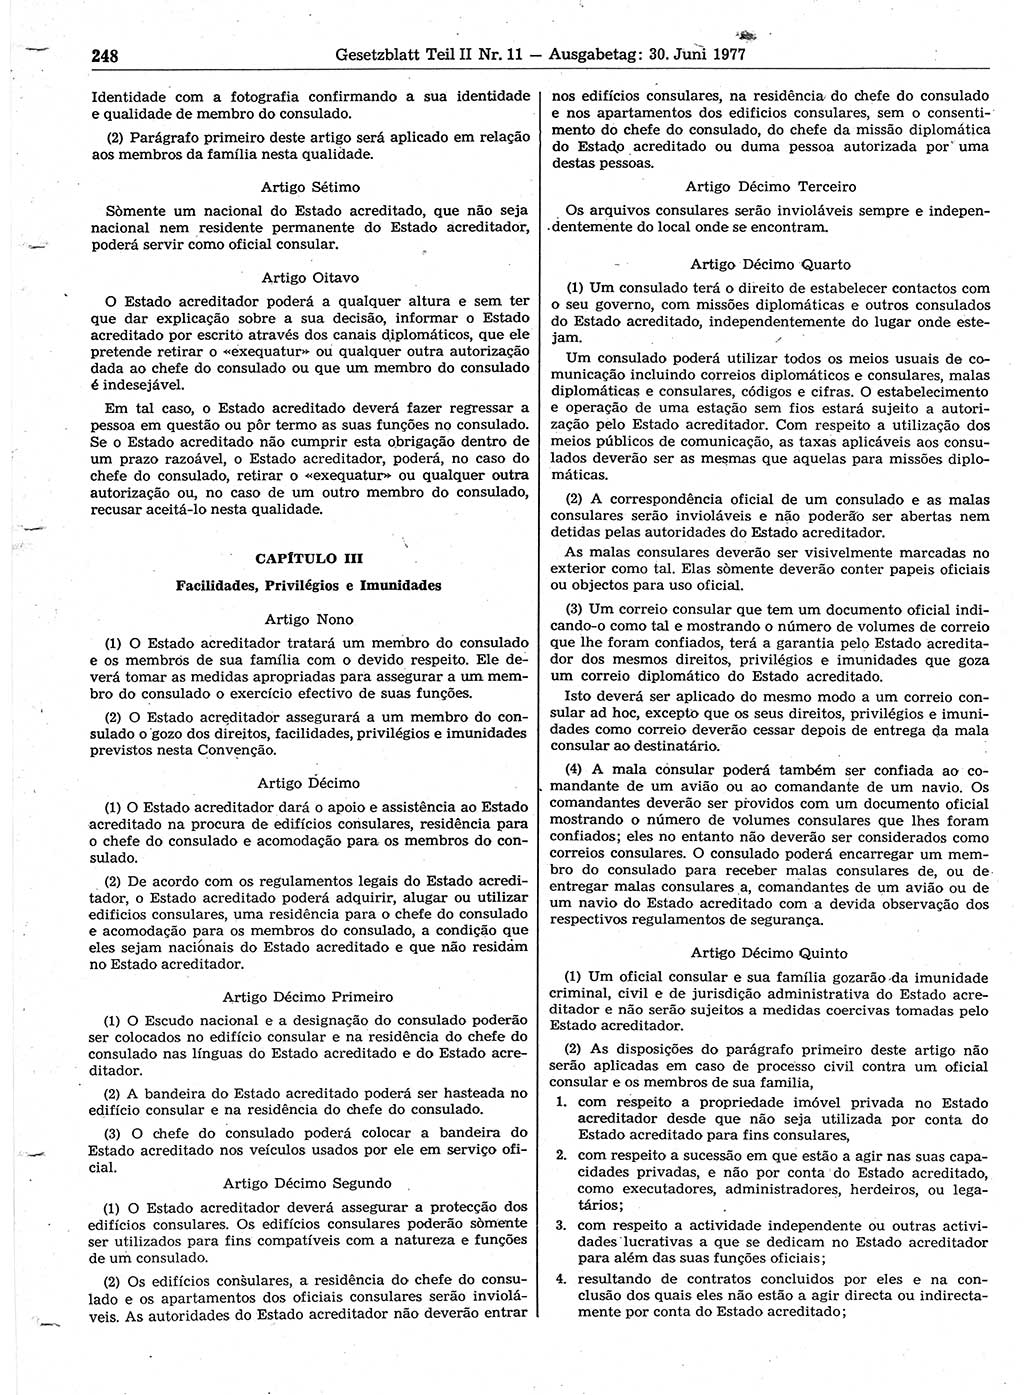 Gesetzblatt (GBl.) der Deutschen Demokratischen Republik (DDR) Teil ⅠⅠ 1977, Seite 248 (GBl. DDR ⅠⅠ 1977, S. 248)